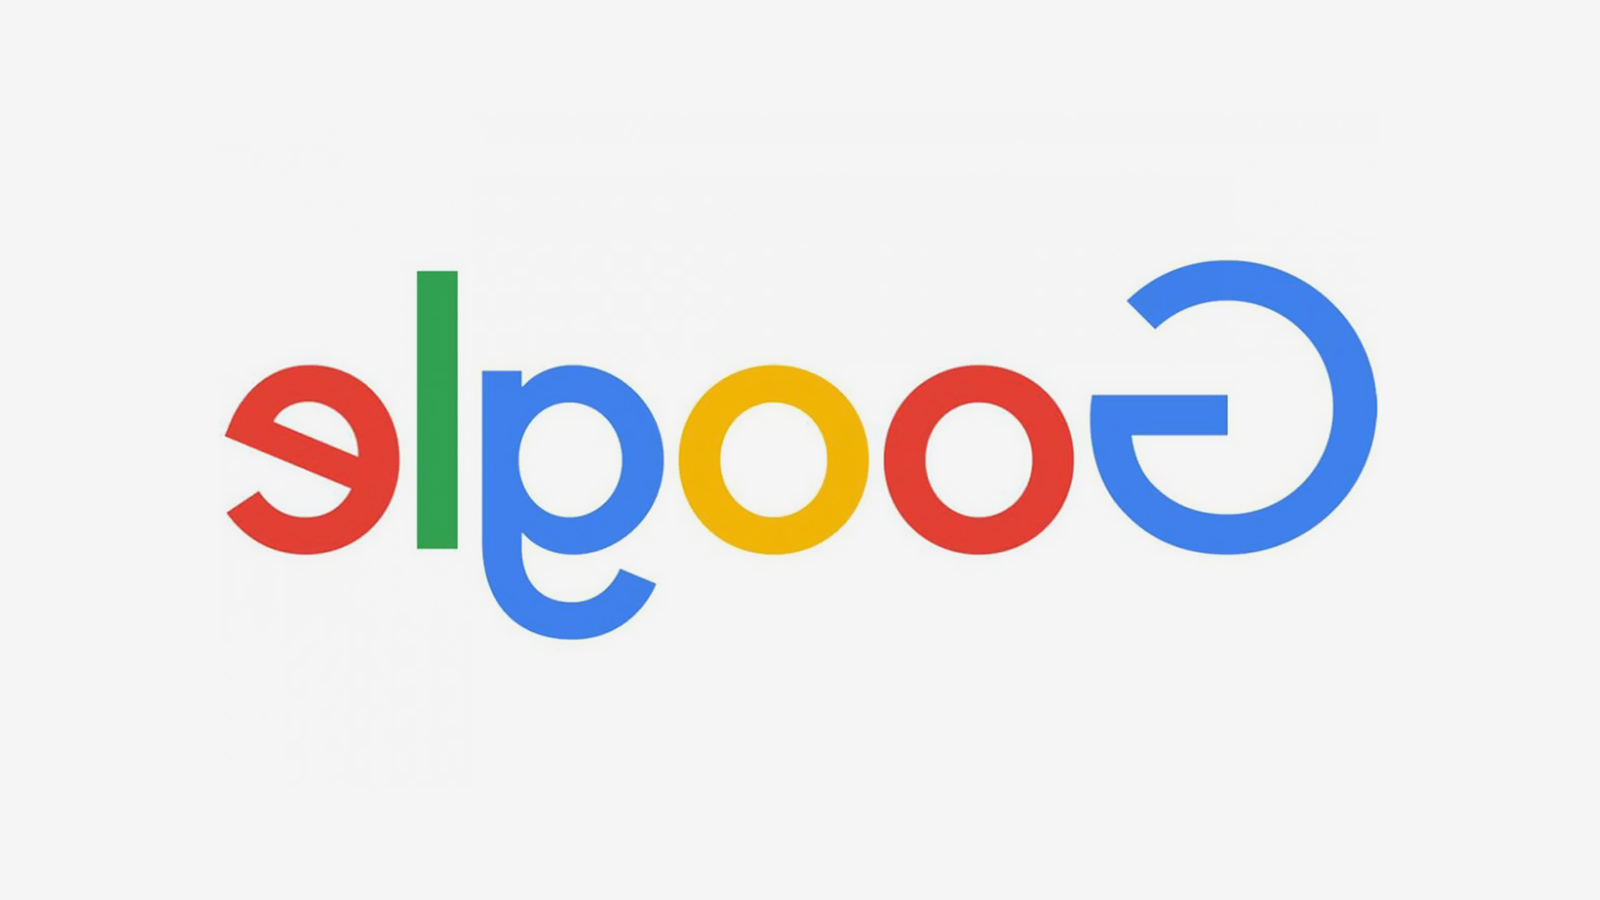 موقع غوغل المعكوس أنشأته الشركة لمجرد التسلية (غوغل)